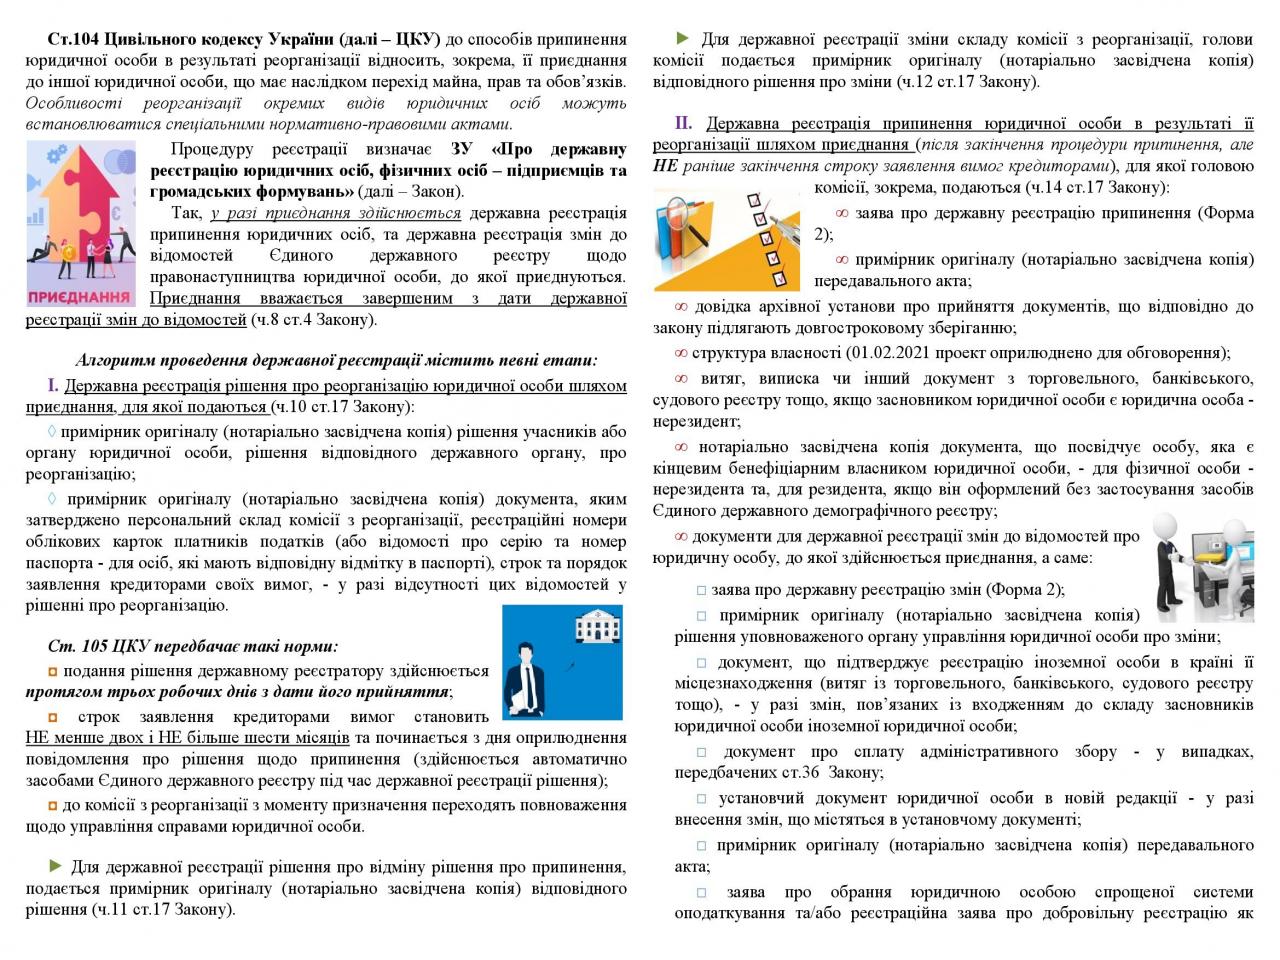 http://dunrada.gov.ua/uploadfile/archive_news/2021/03/15/2021-03-15_1755/images/images-81230.jpg